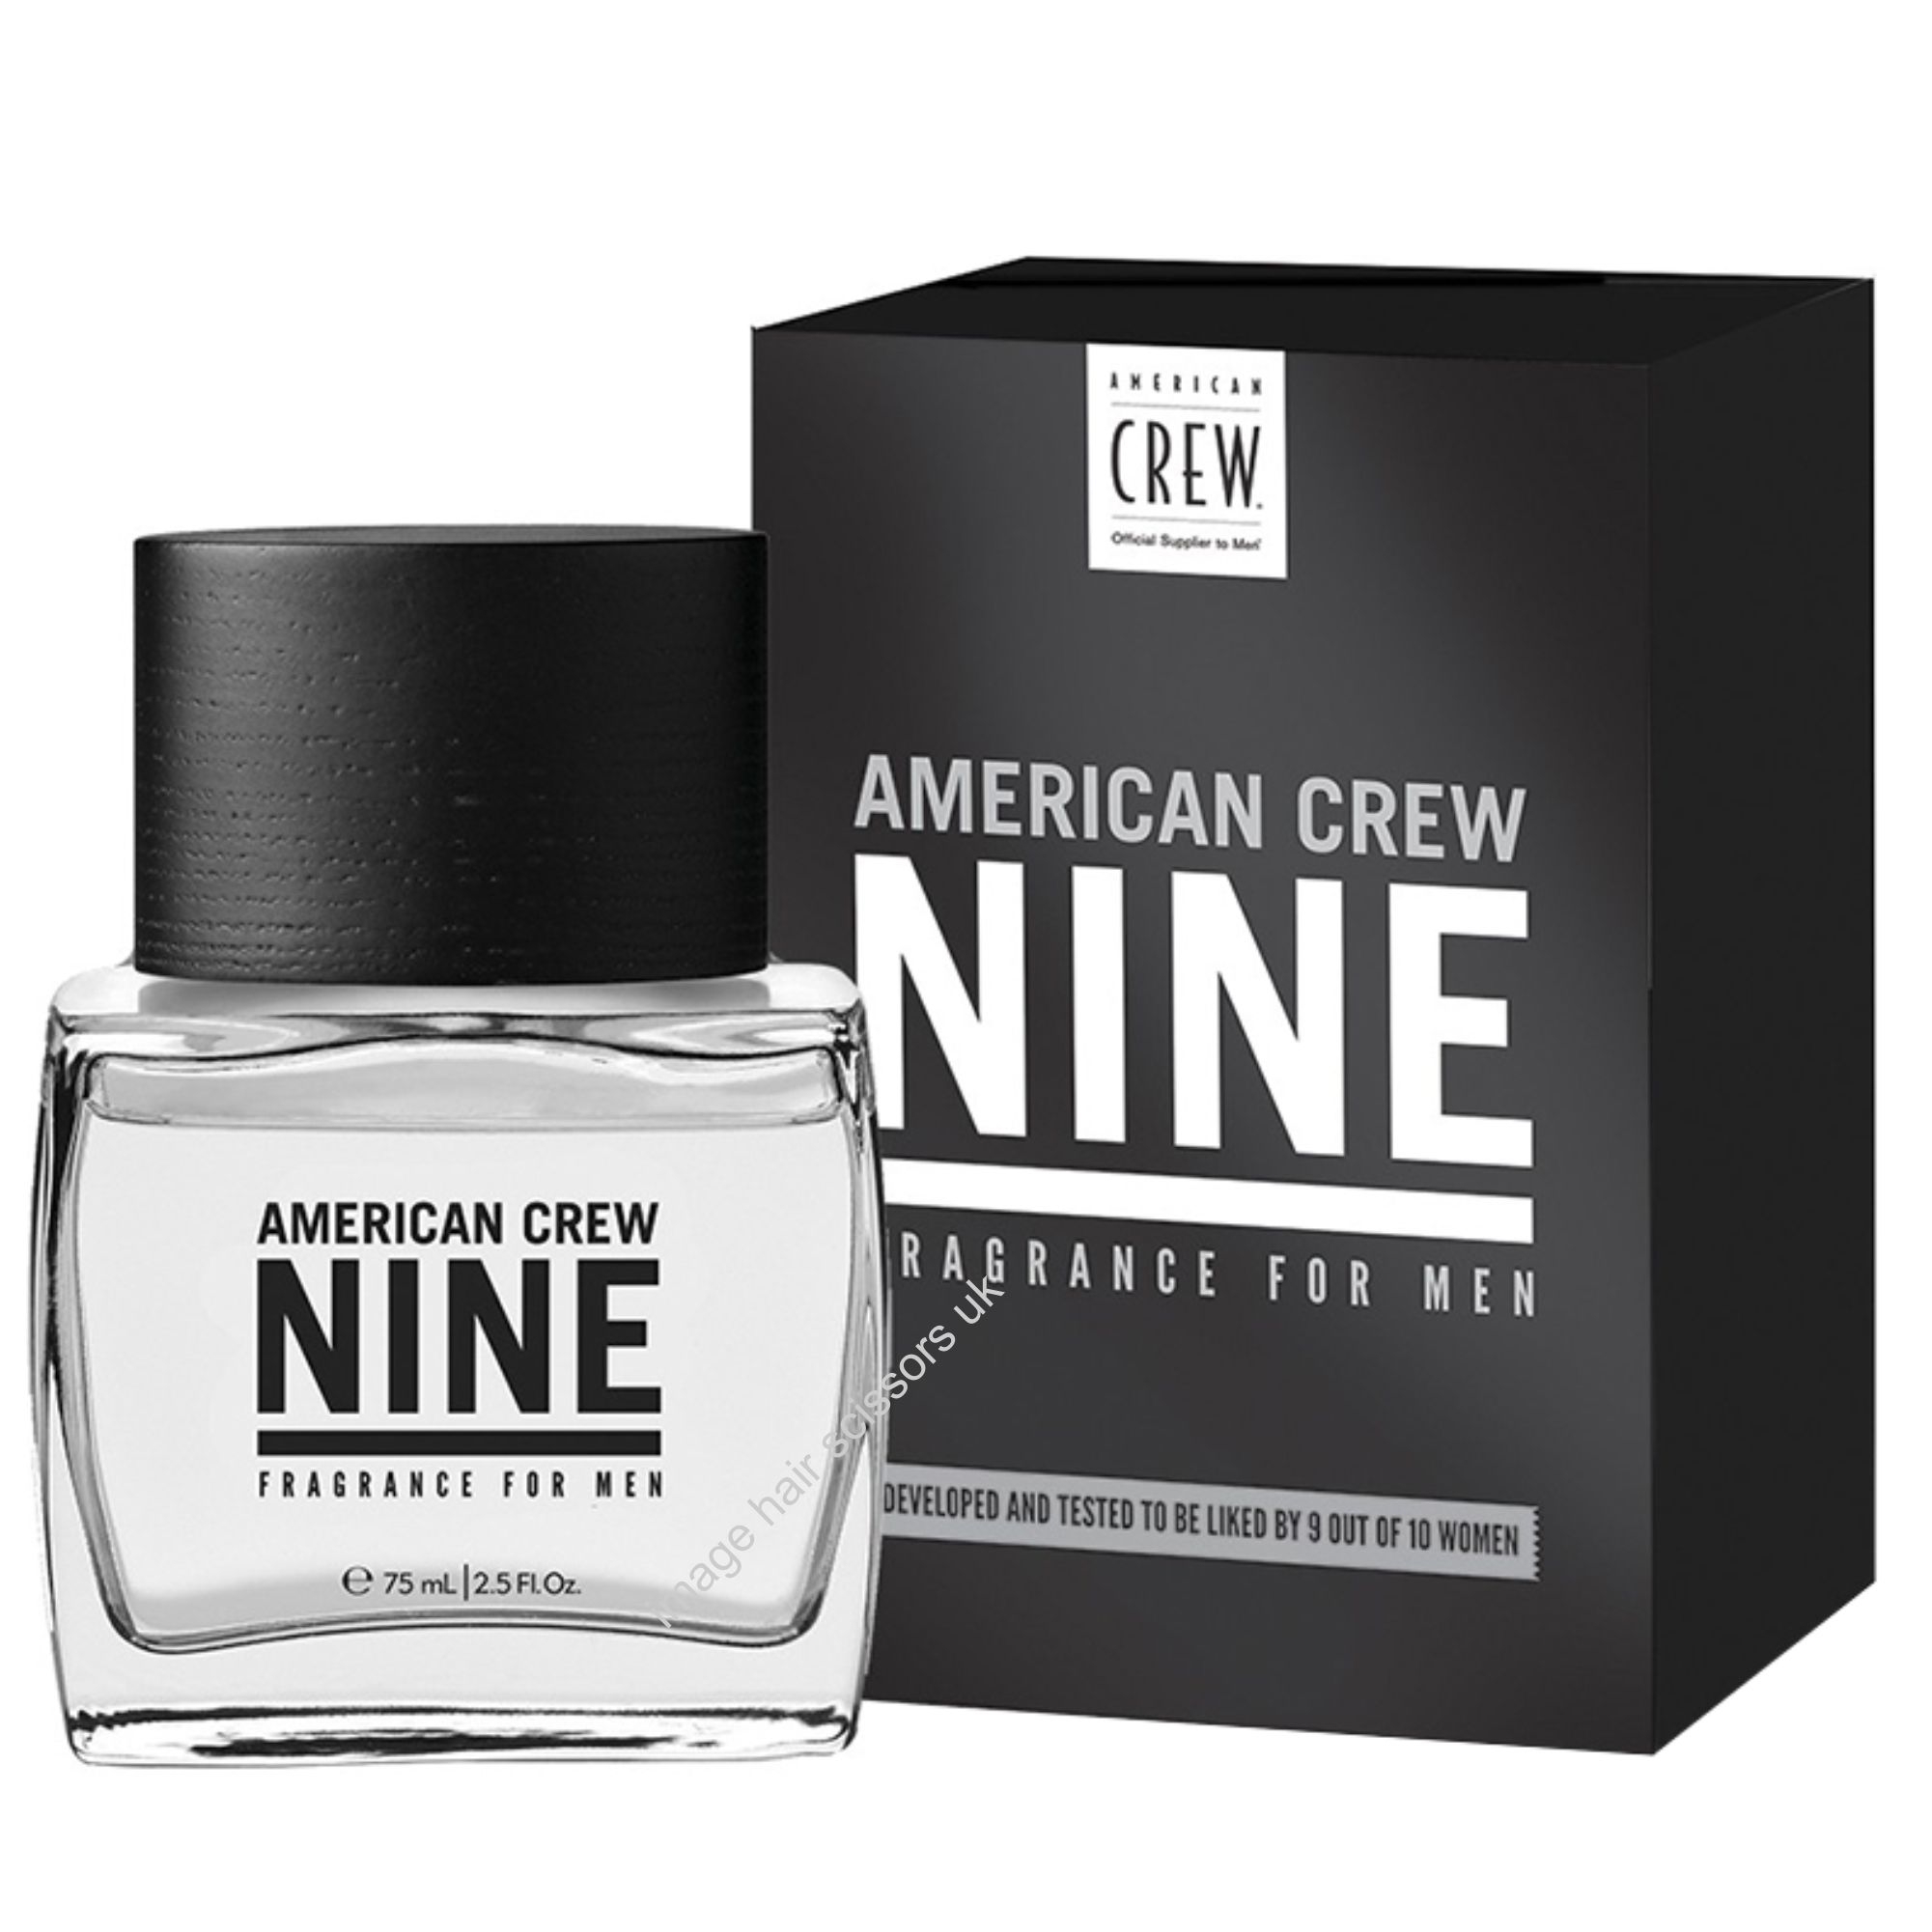 American Crew Nine Fragrance for Men 75ml